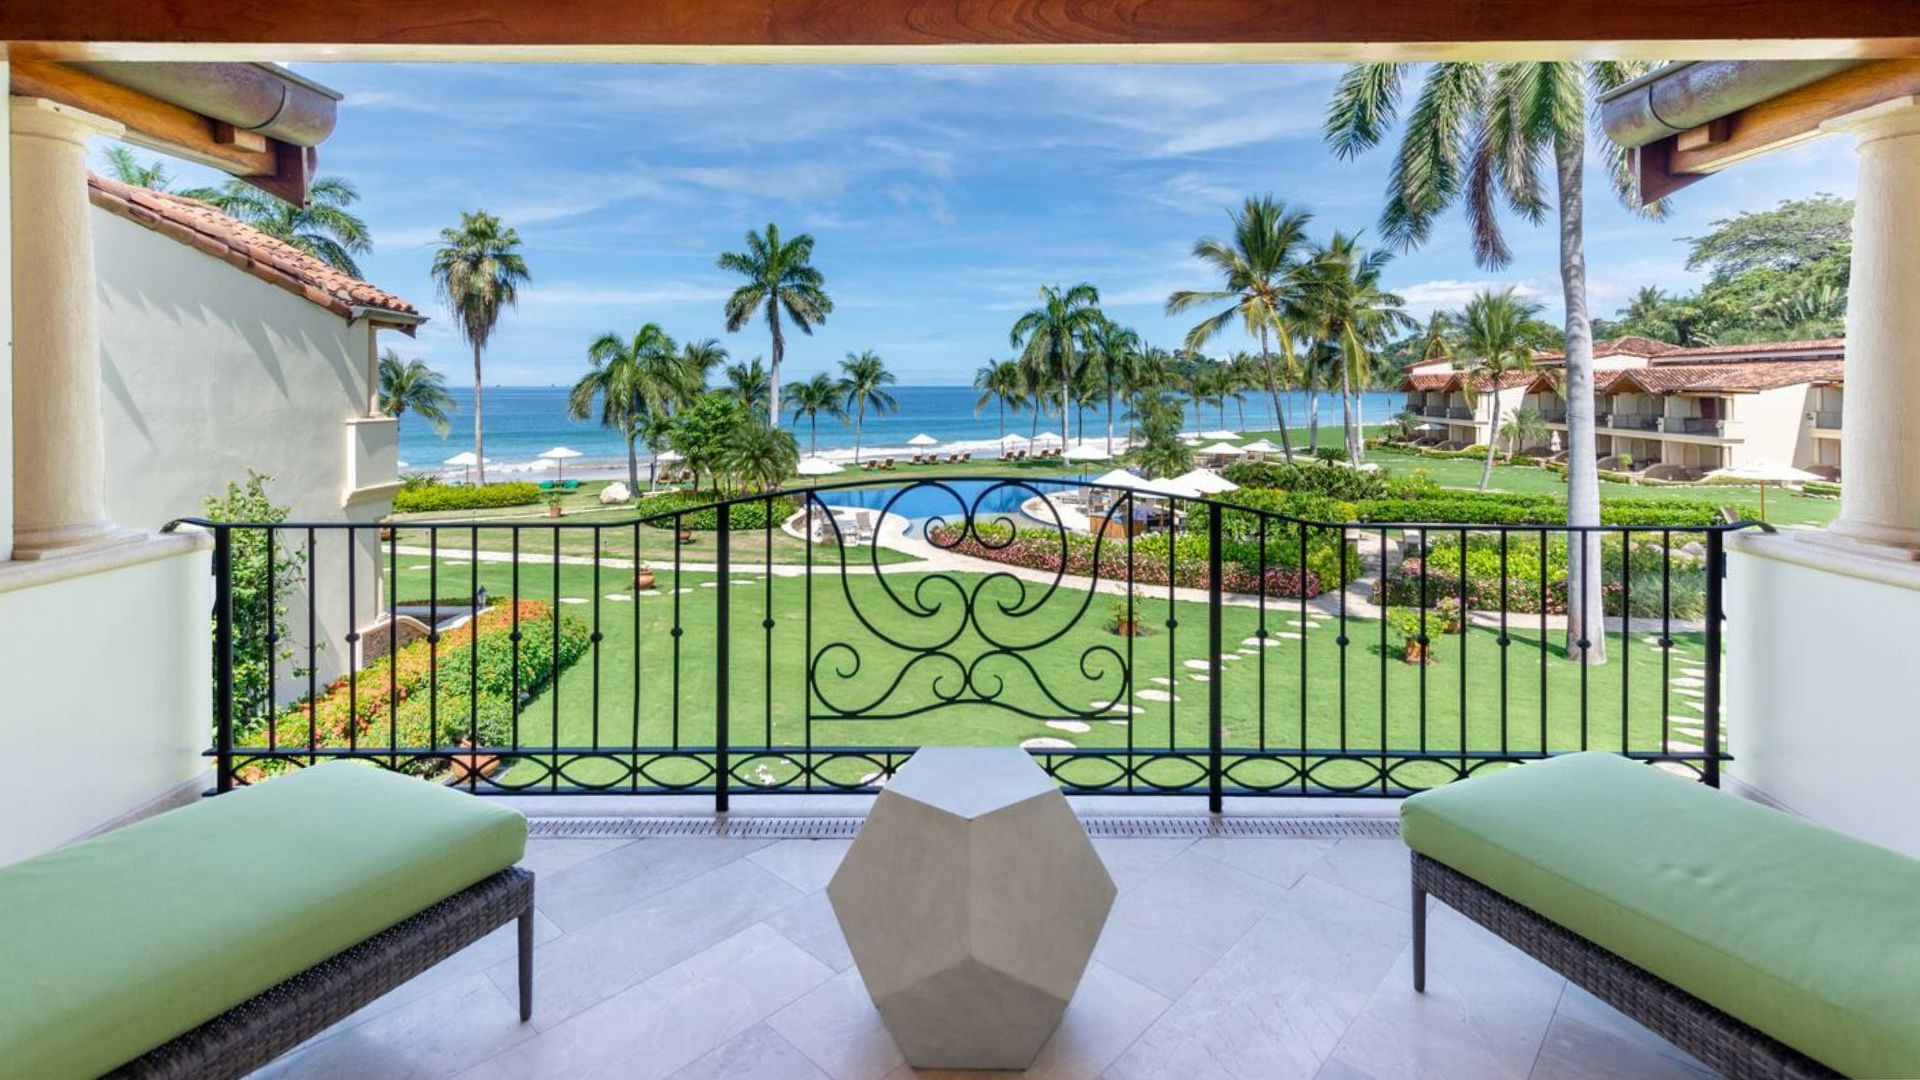 vacation rental property in Costa Rica overlooking the ocean